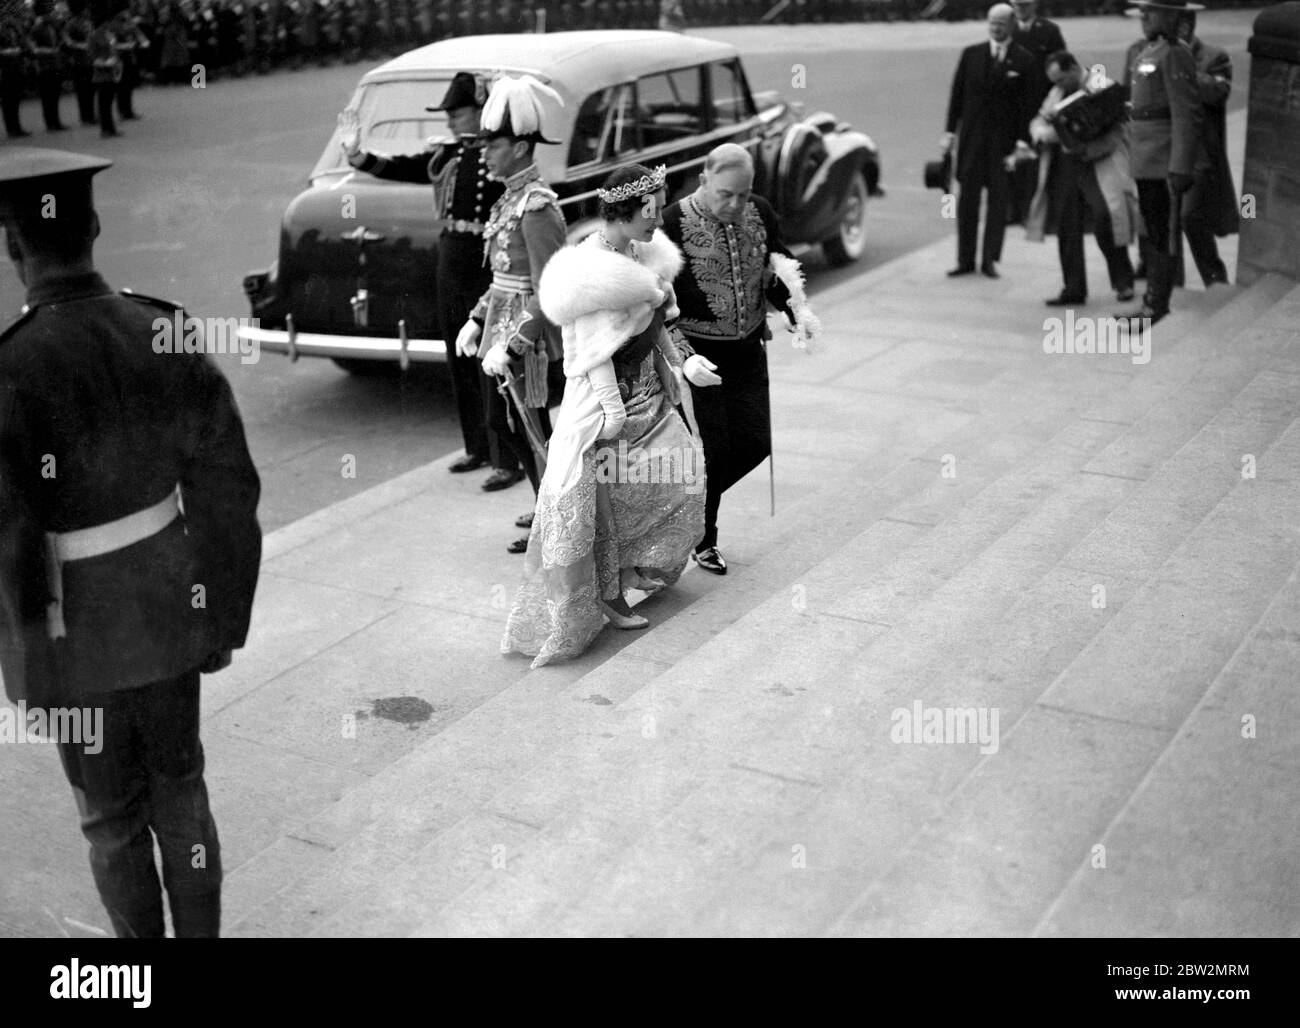 Die Königliche Tour durch Kanada und die USA von König George VI und Königin Elizabeth , 1939 . Königin Elizabeth, begleitet von Mackenzie King, dem Premierminister Kanadas, mit dem König im Hintergrund, als sie in den Houses of Parliament, Ottawa, ankamen. Stockfoto